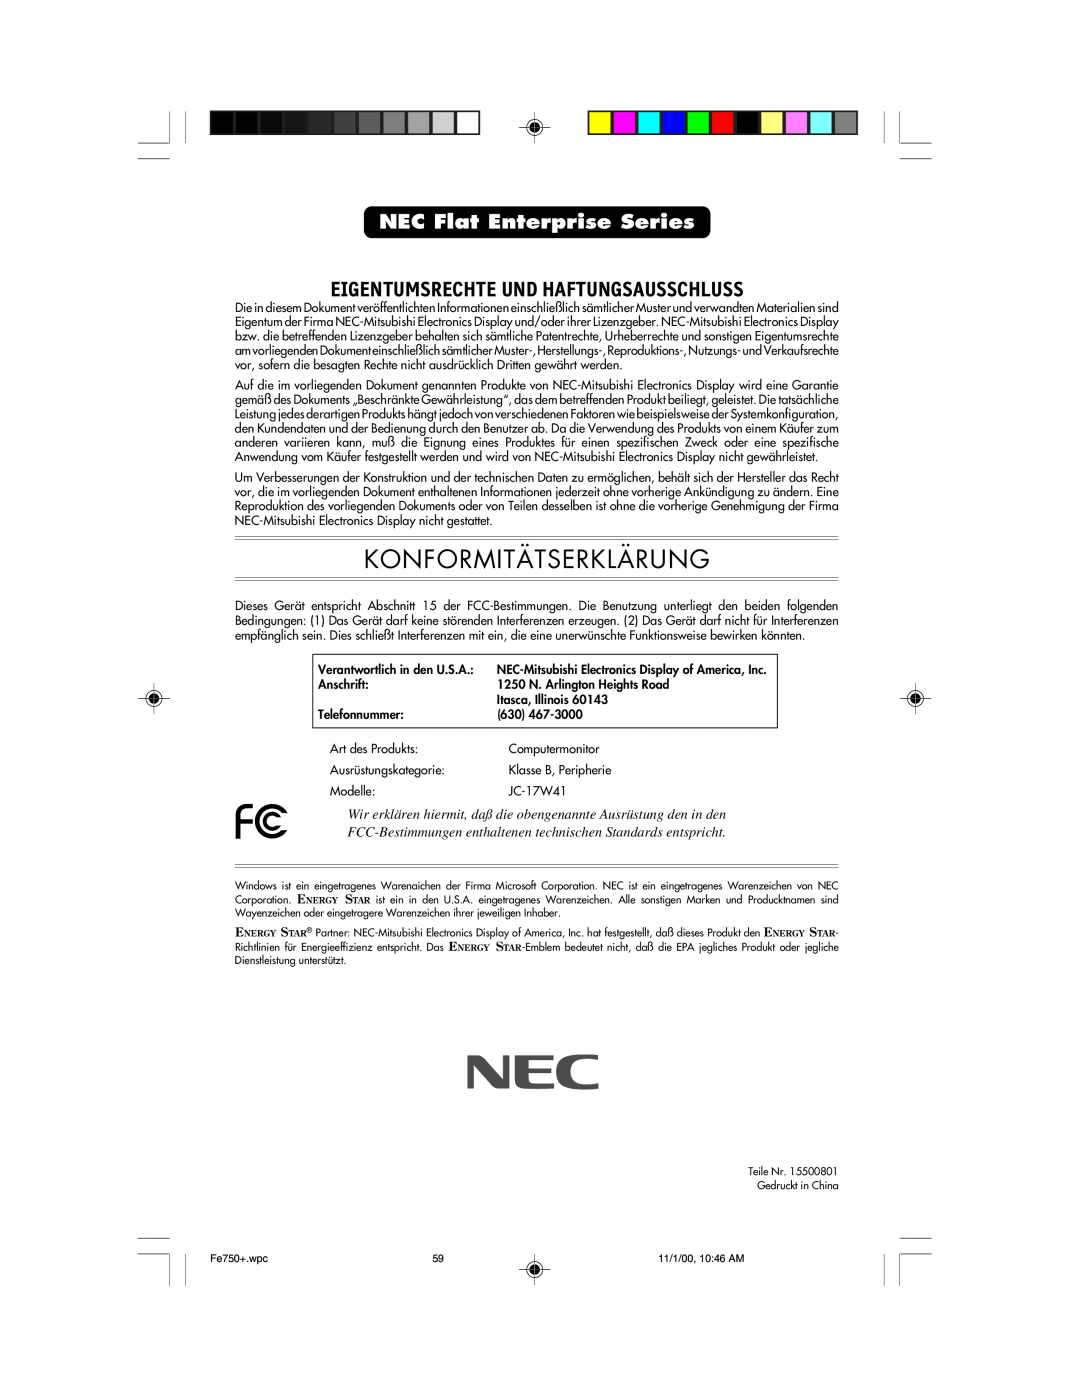 NEC FE750 Plus user manual Eigentumsrechte Und Haftungsausschluss, NEC Flat Enterprise Series, Konformitätserklärung 